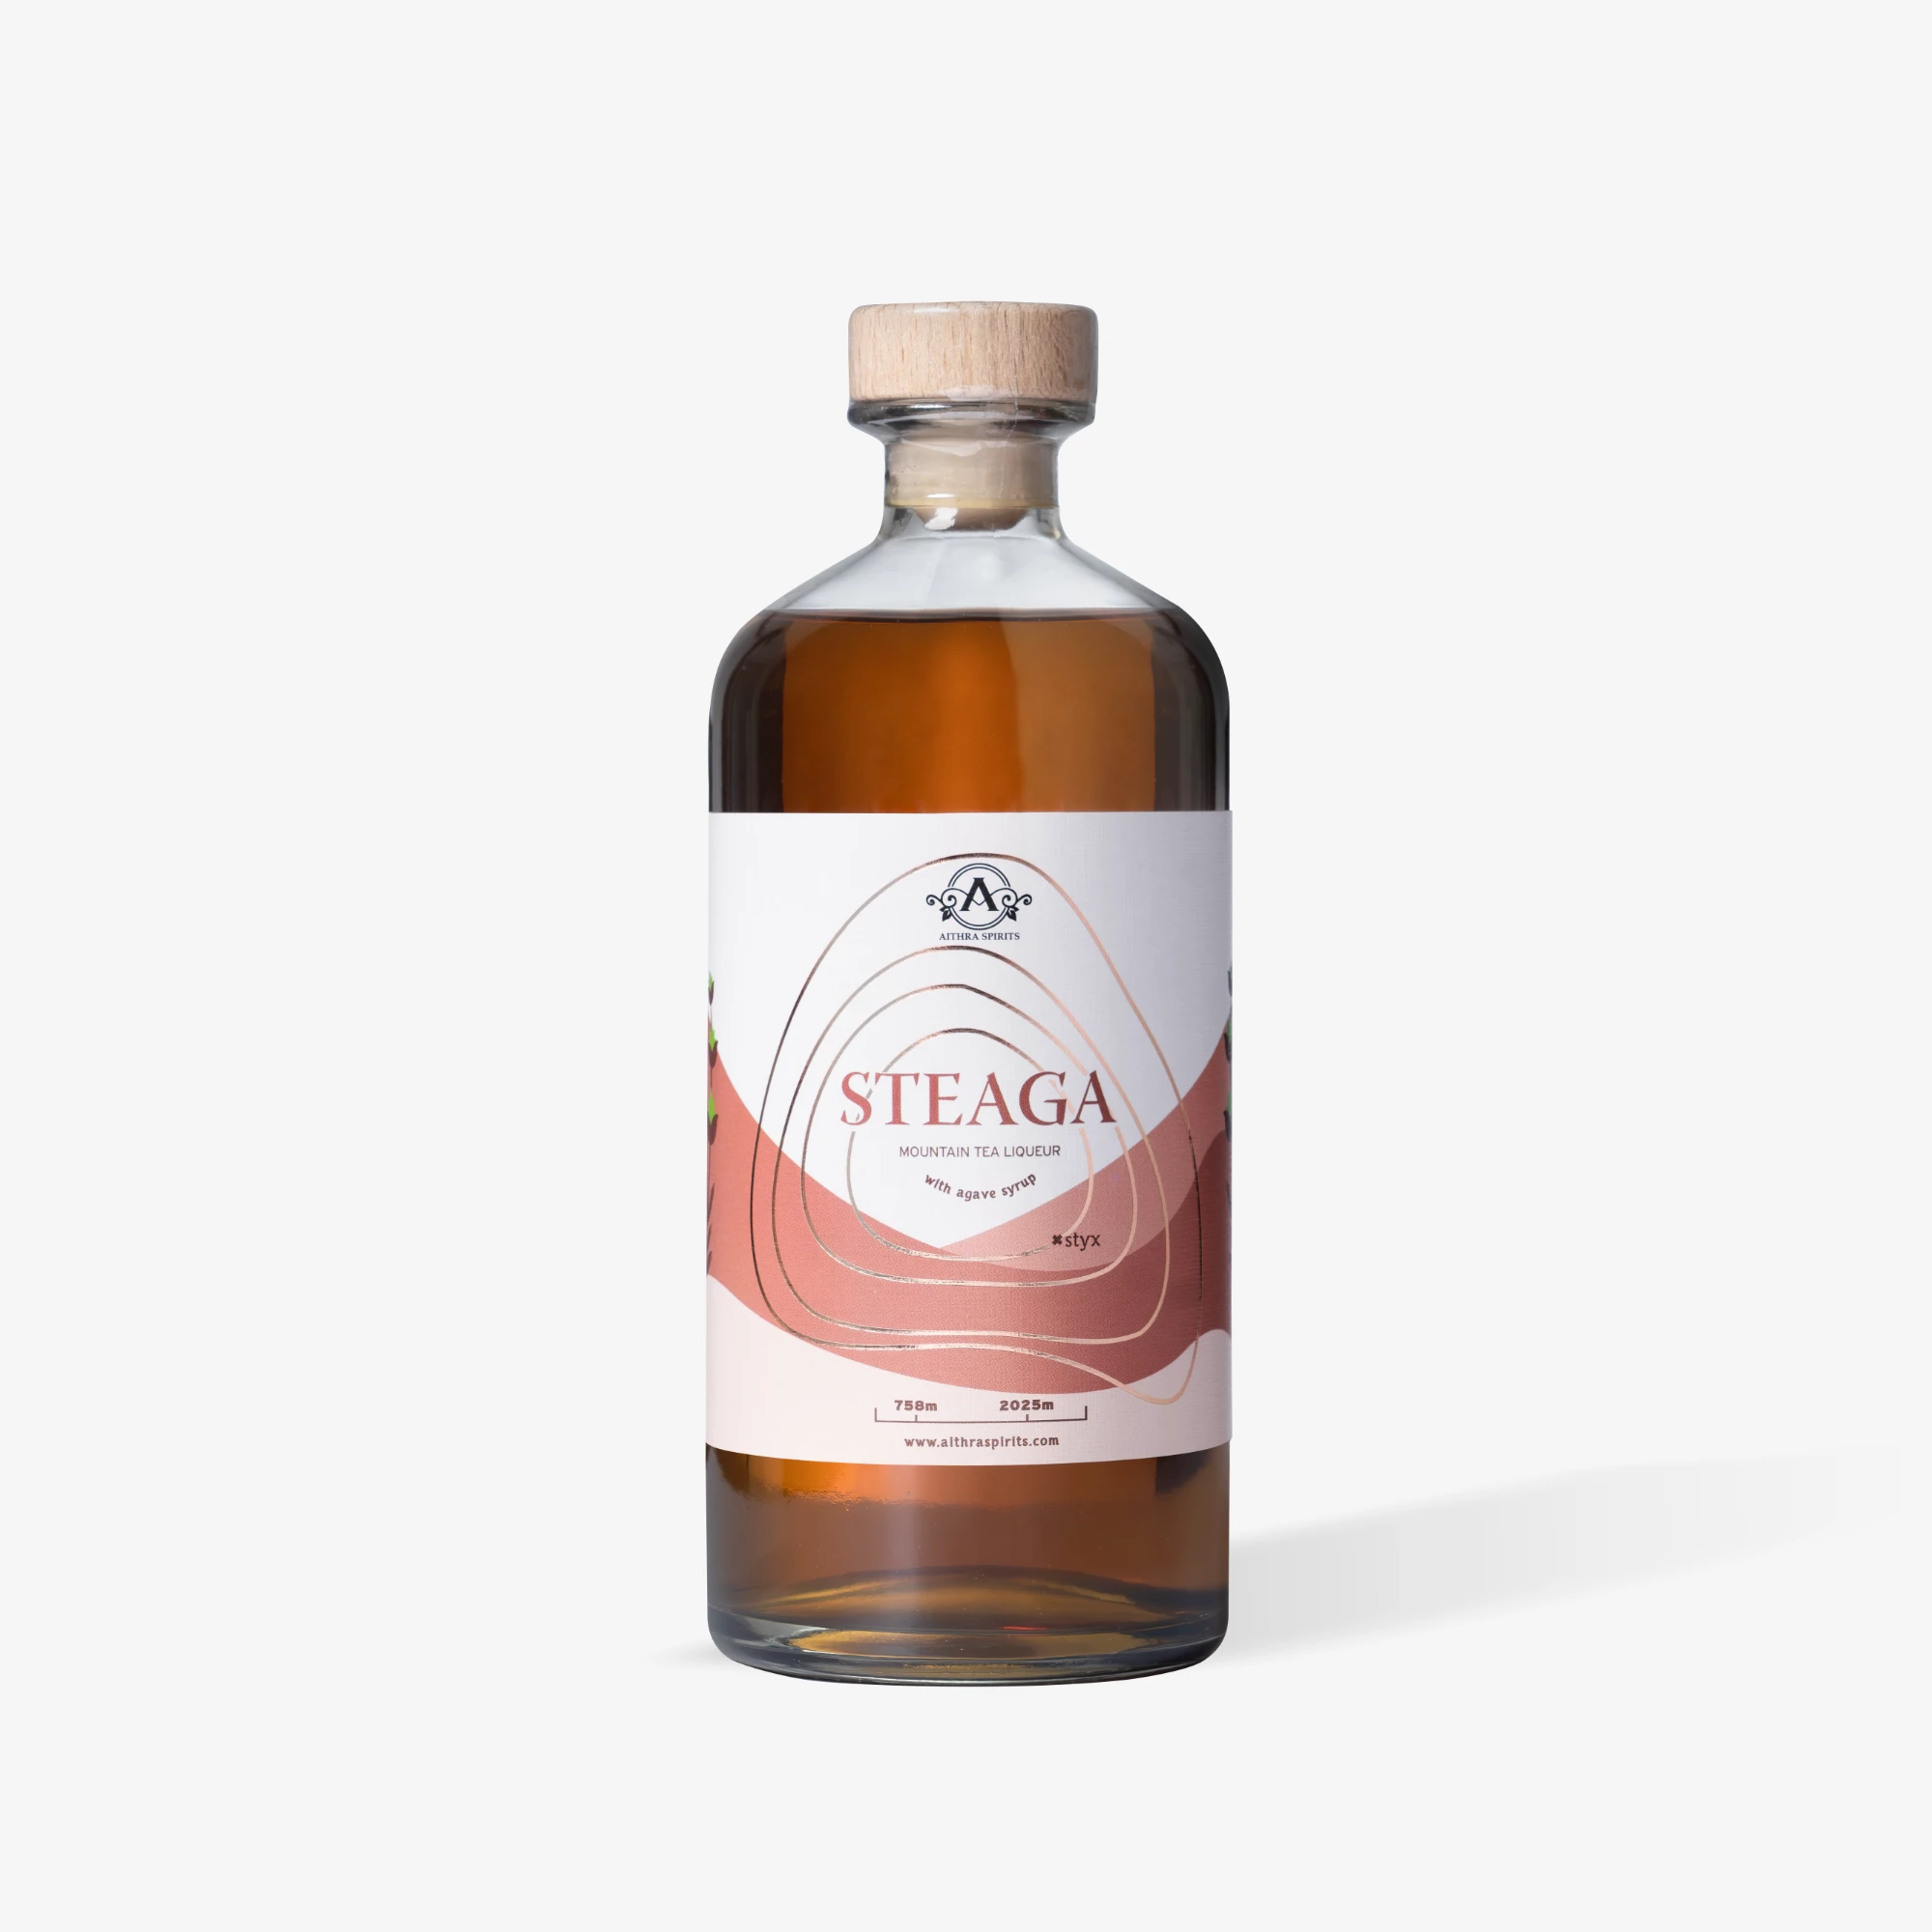 STEAGA - Greek Mountain Tea liqueur